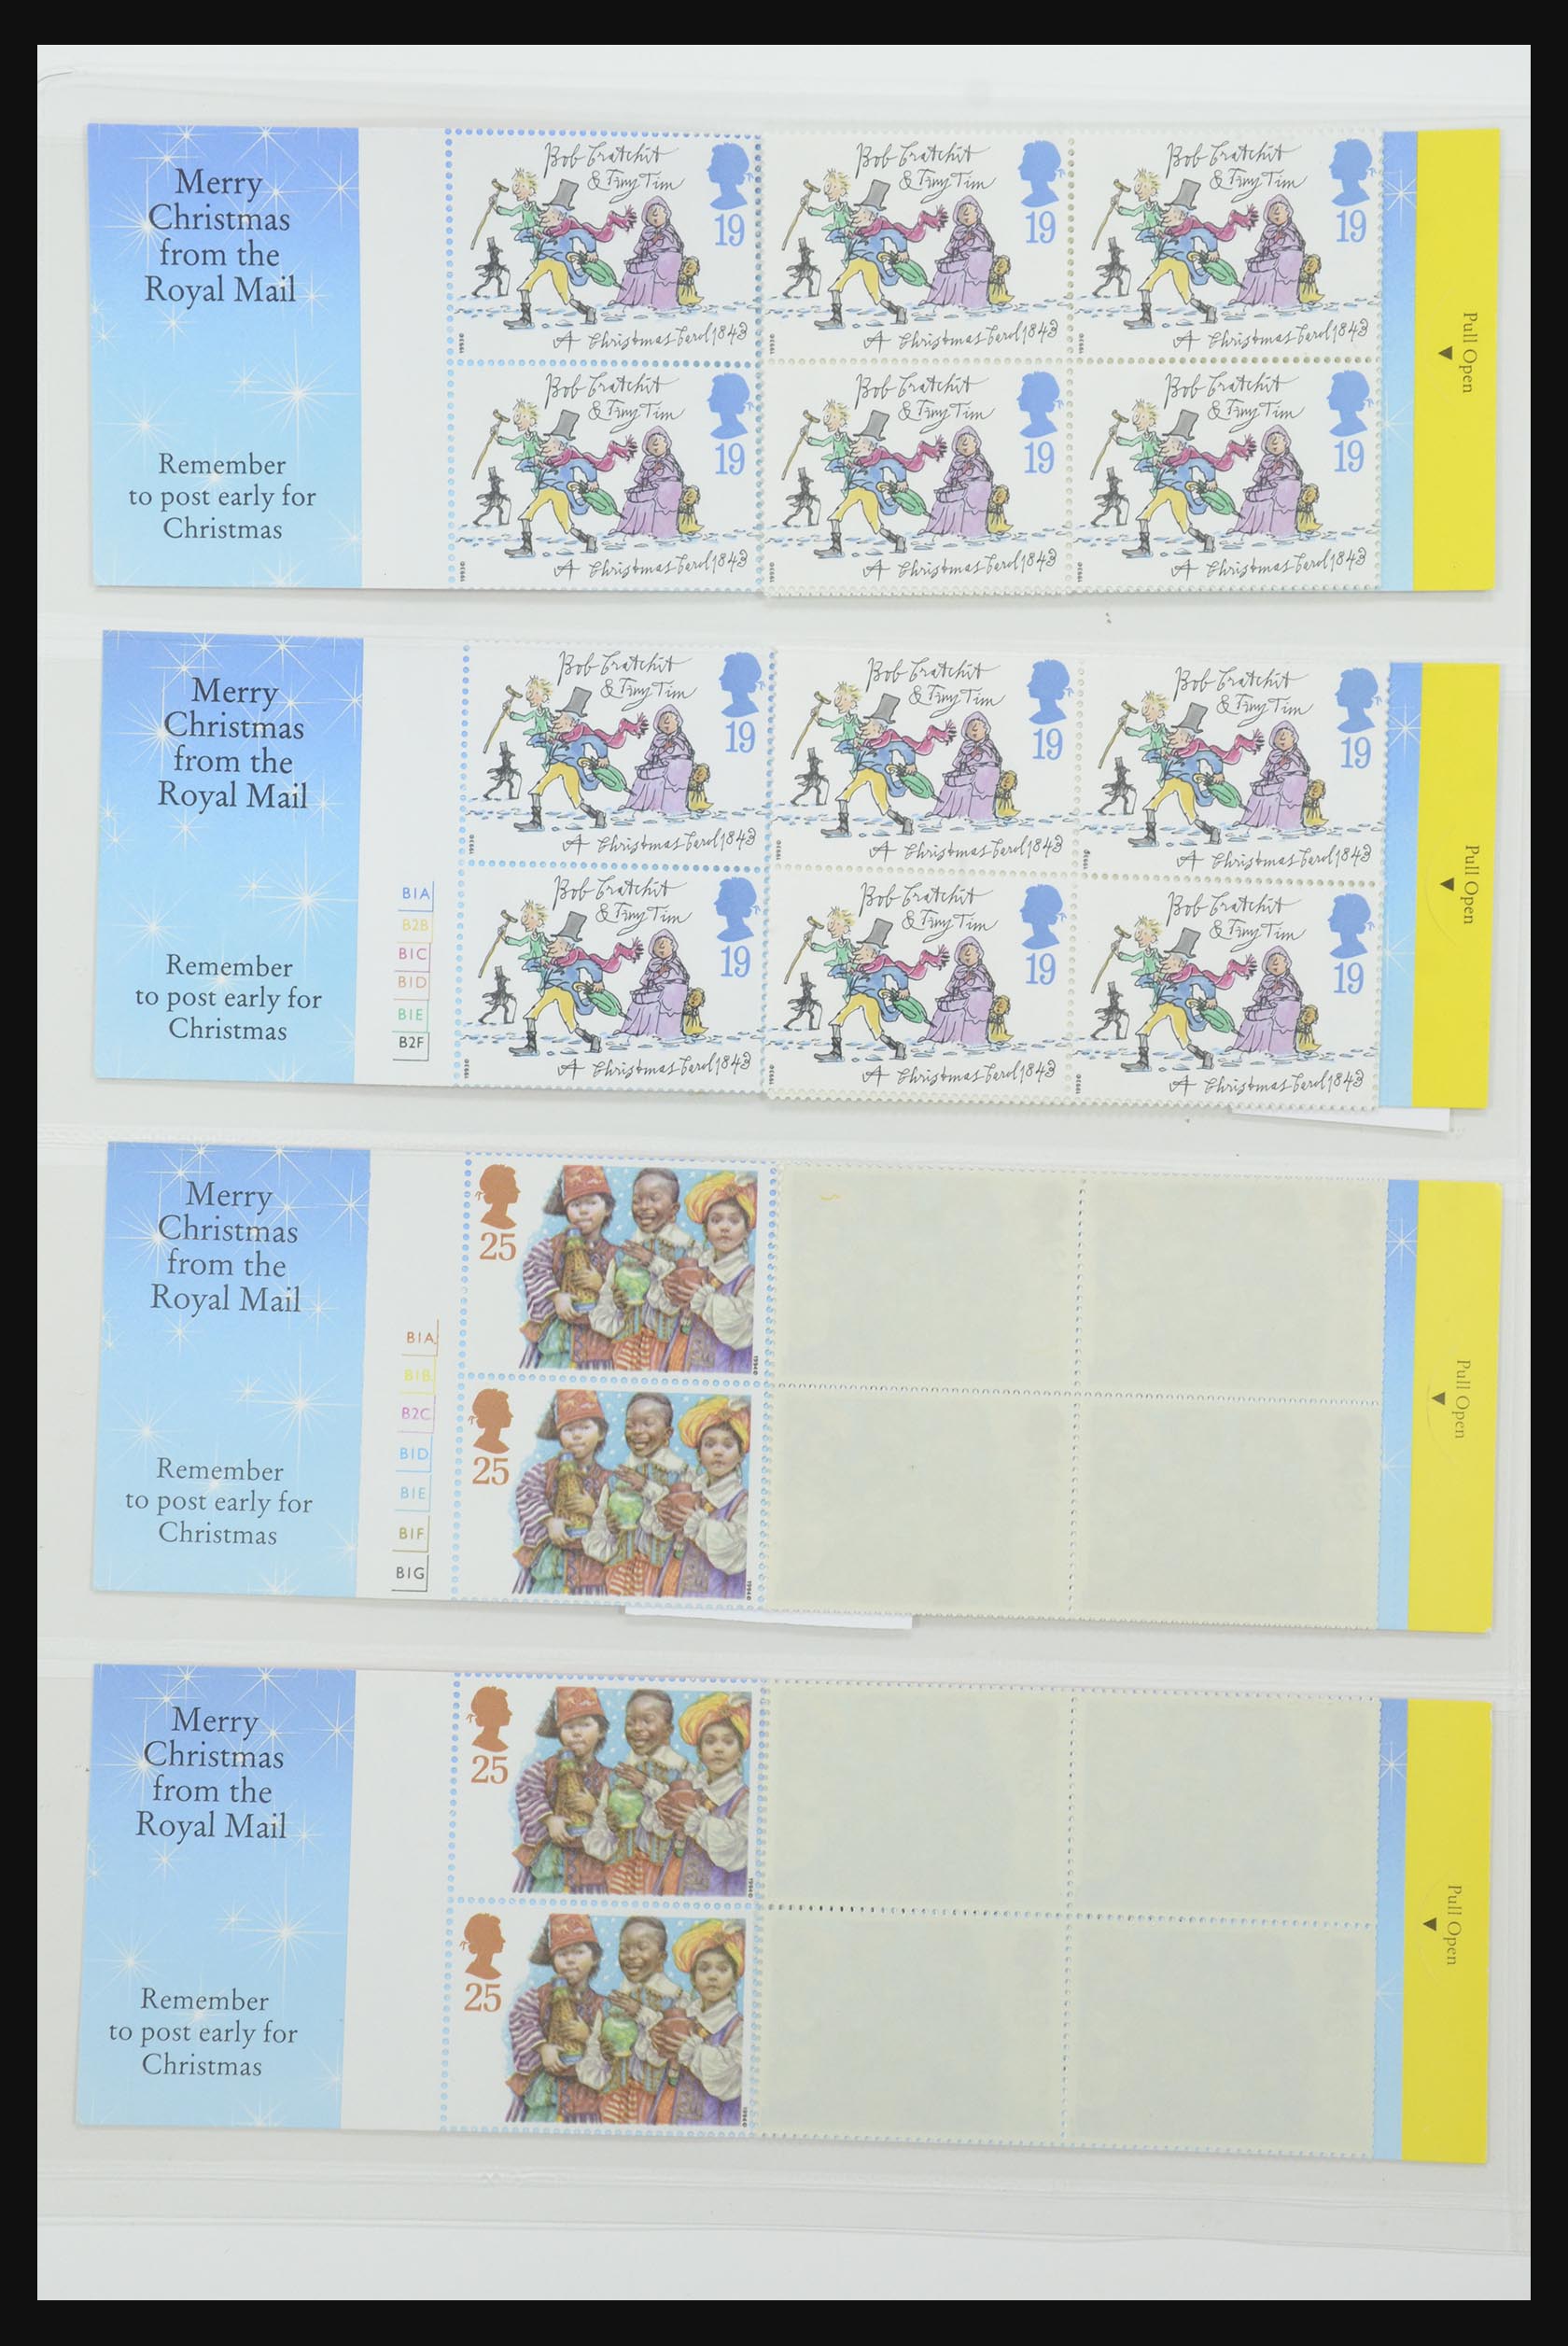 31959 296 - 31959 Engeland postzegelboekjes 1987-2016!!